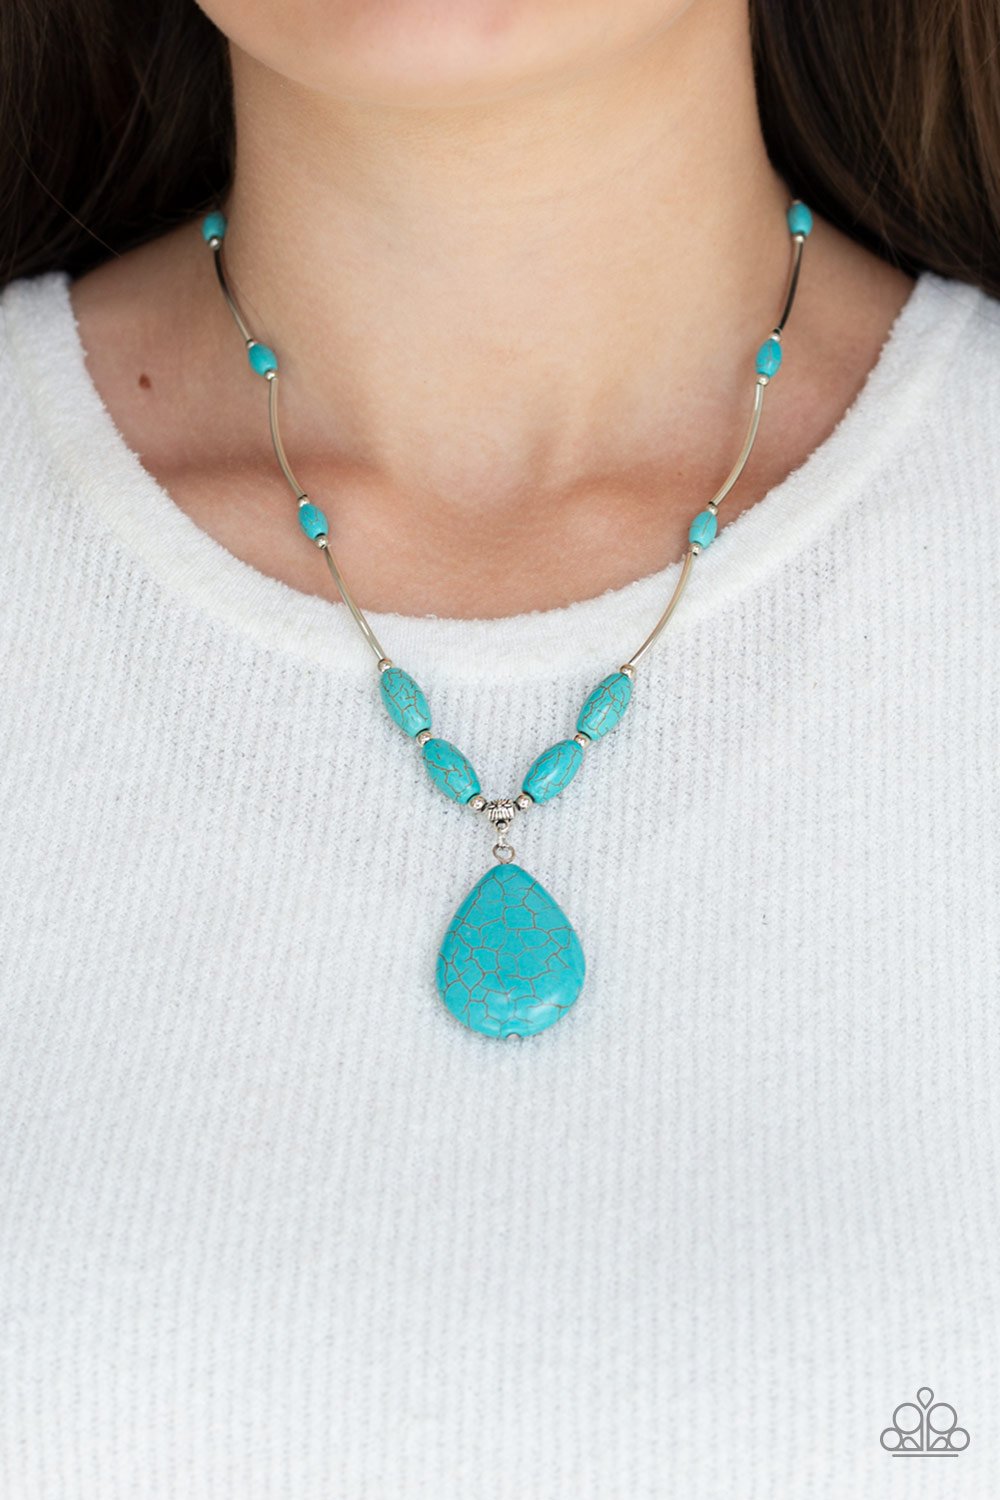 Explore the Elements-blue-Paparazzi necklace